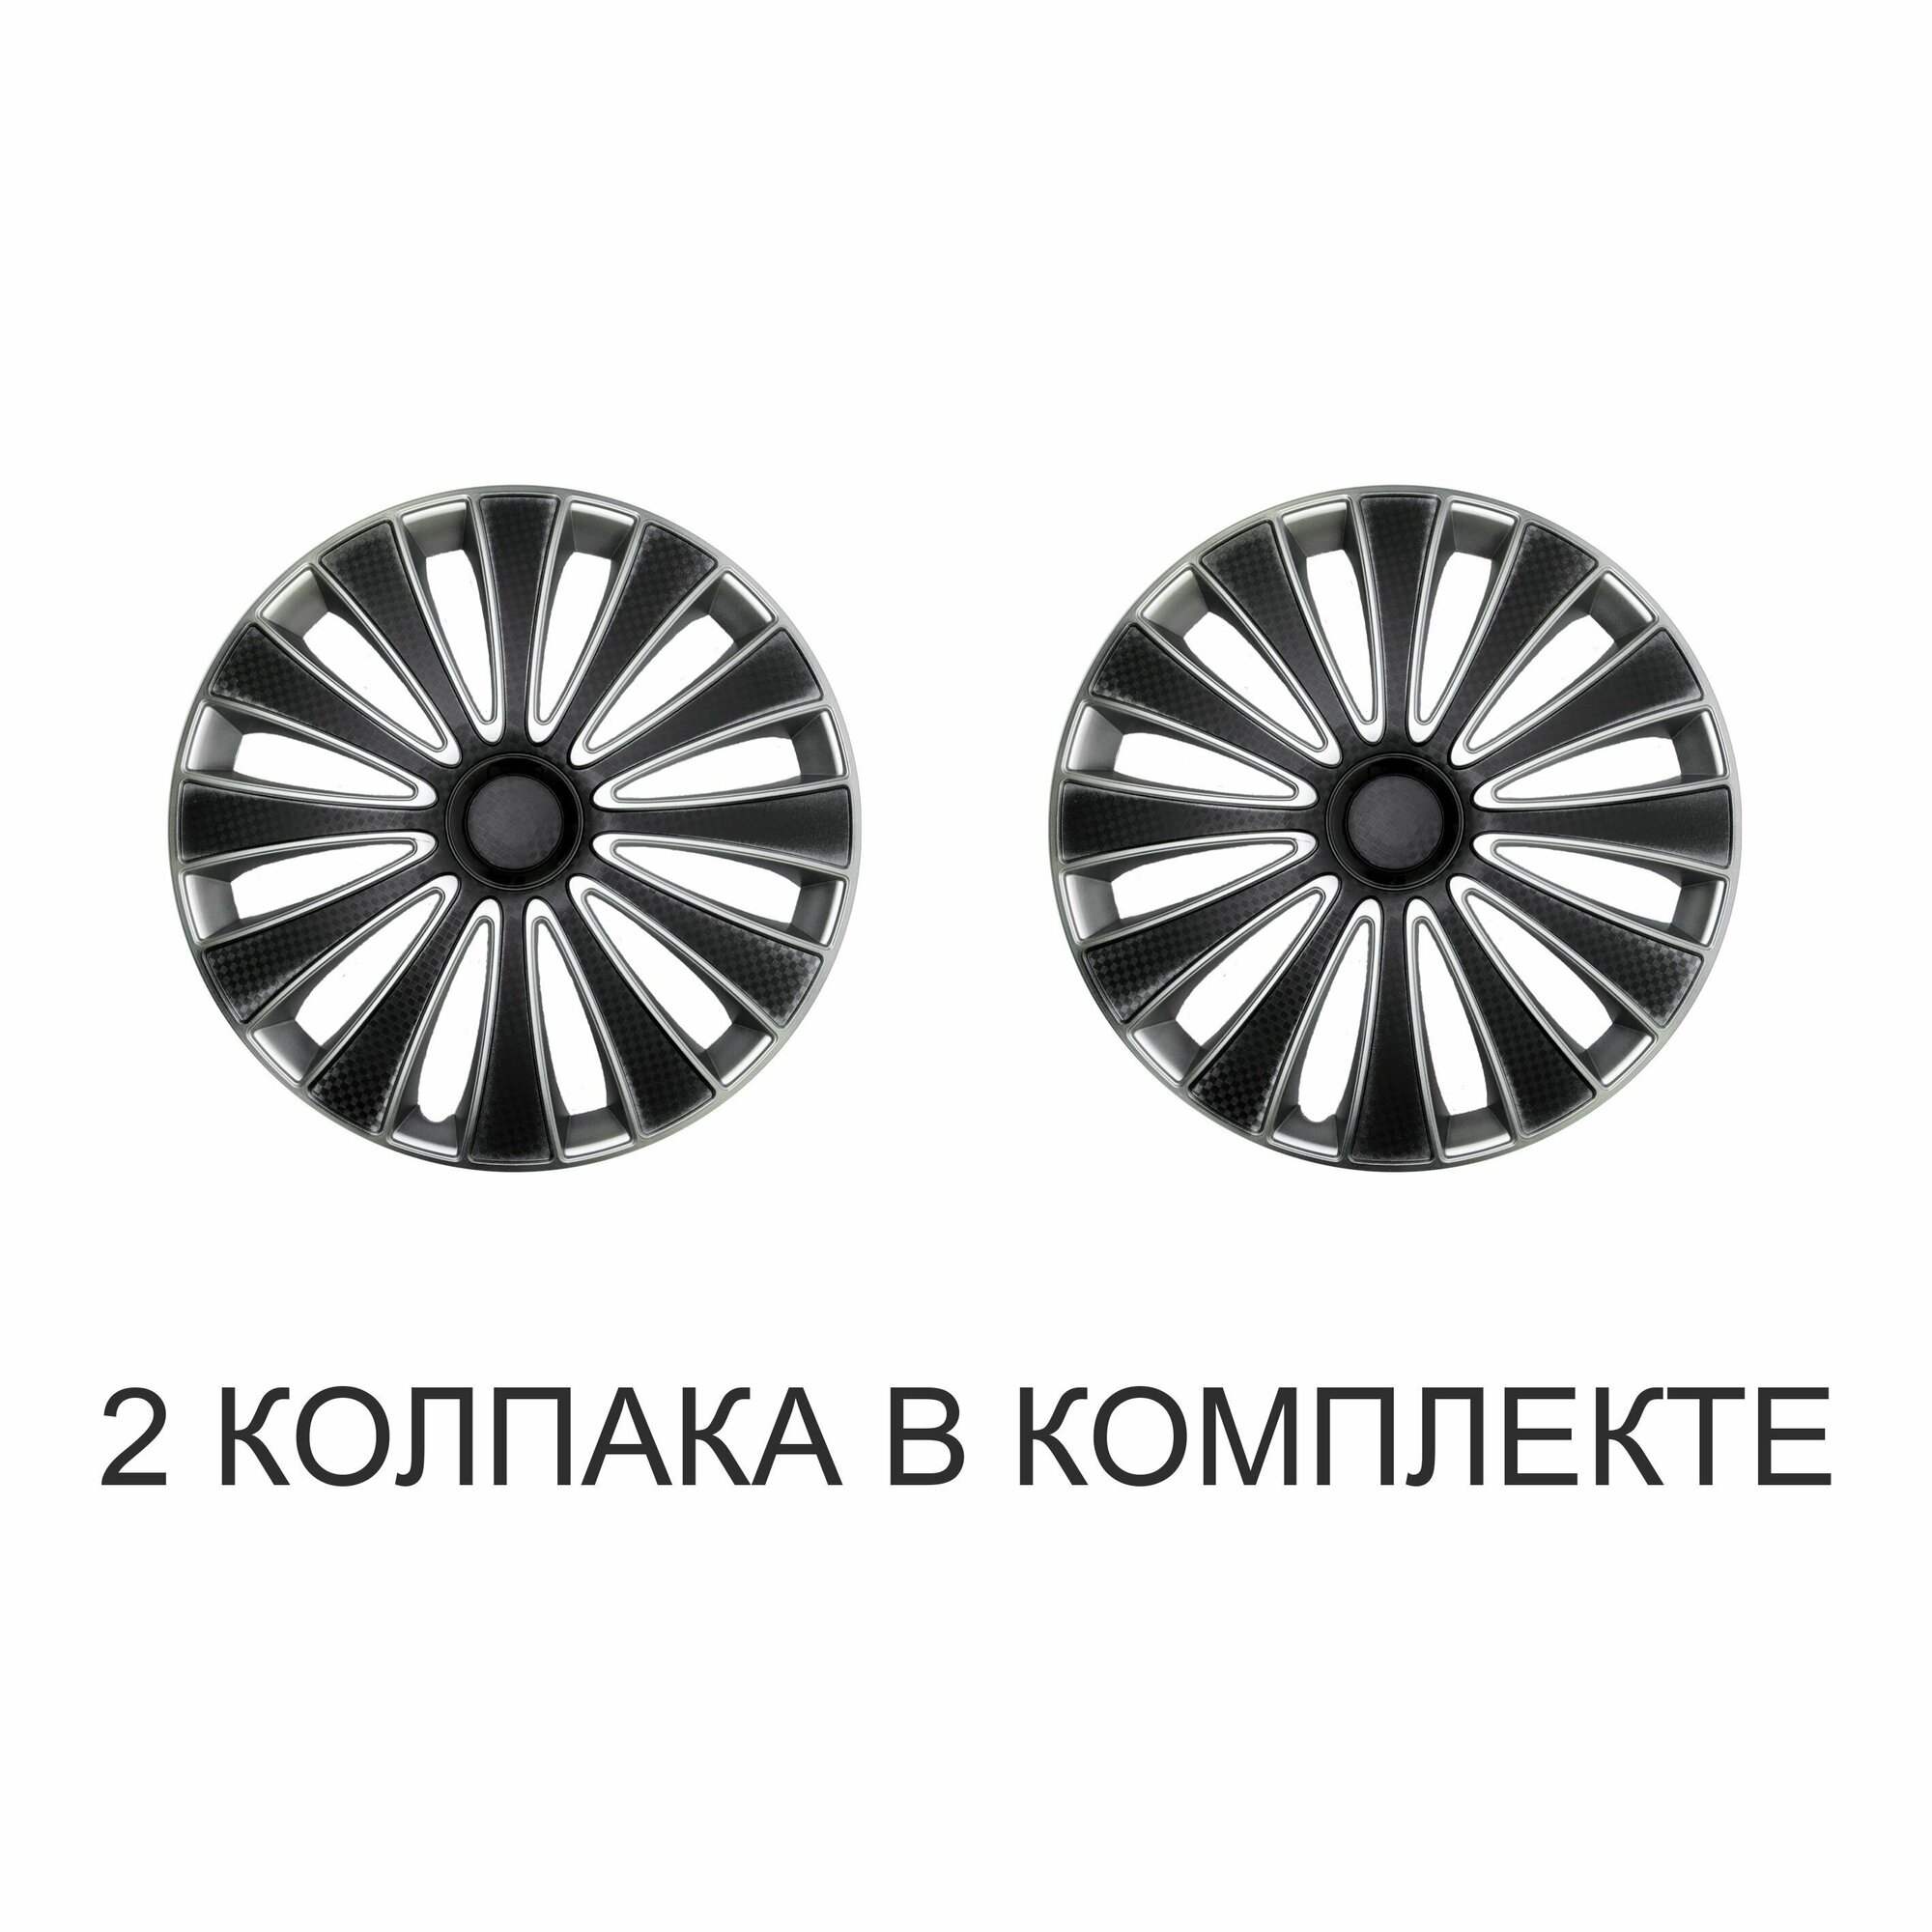 Колпаки на колеса STAR GMK SUPER BLACK R15, комплект 2шт, на диски радиус 15, легковой авто, цвет черный, серый, карбон.